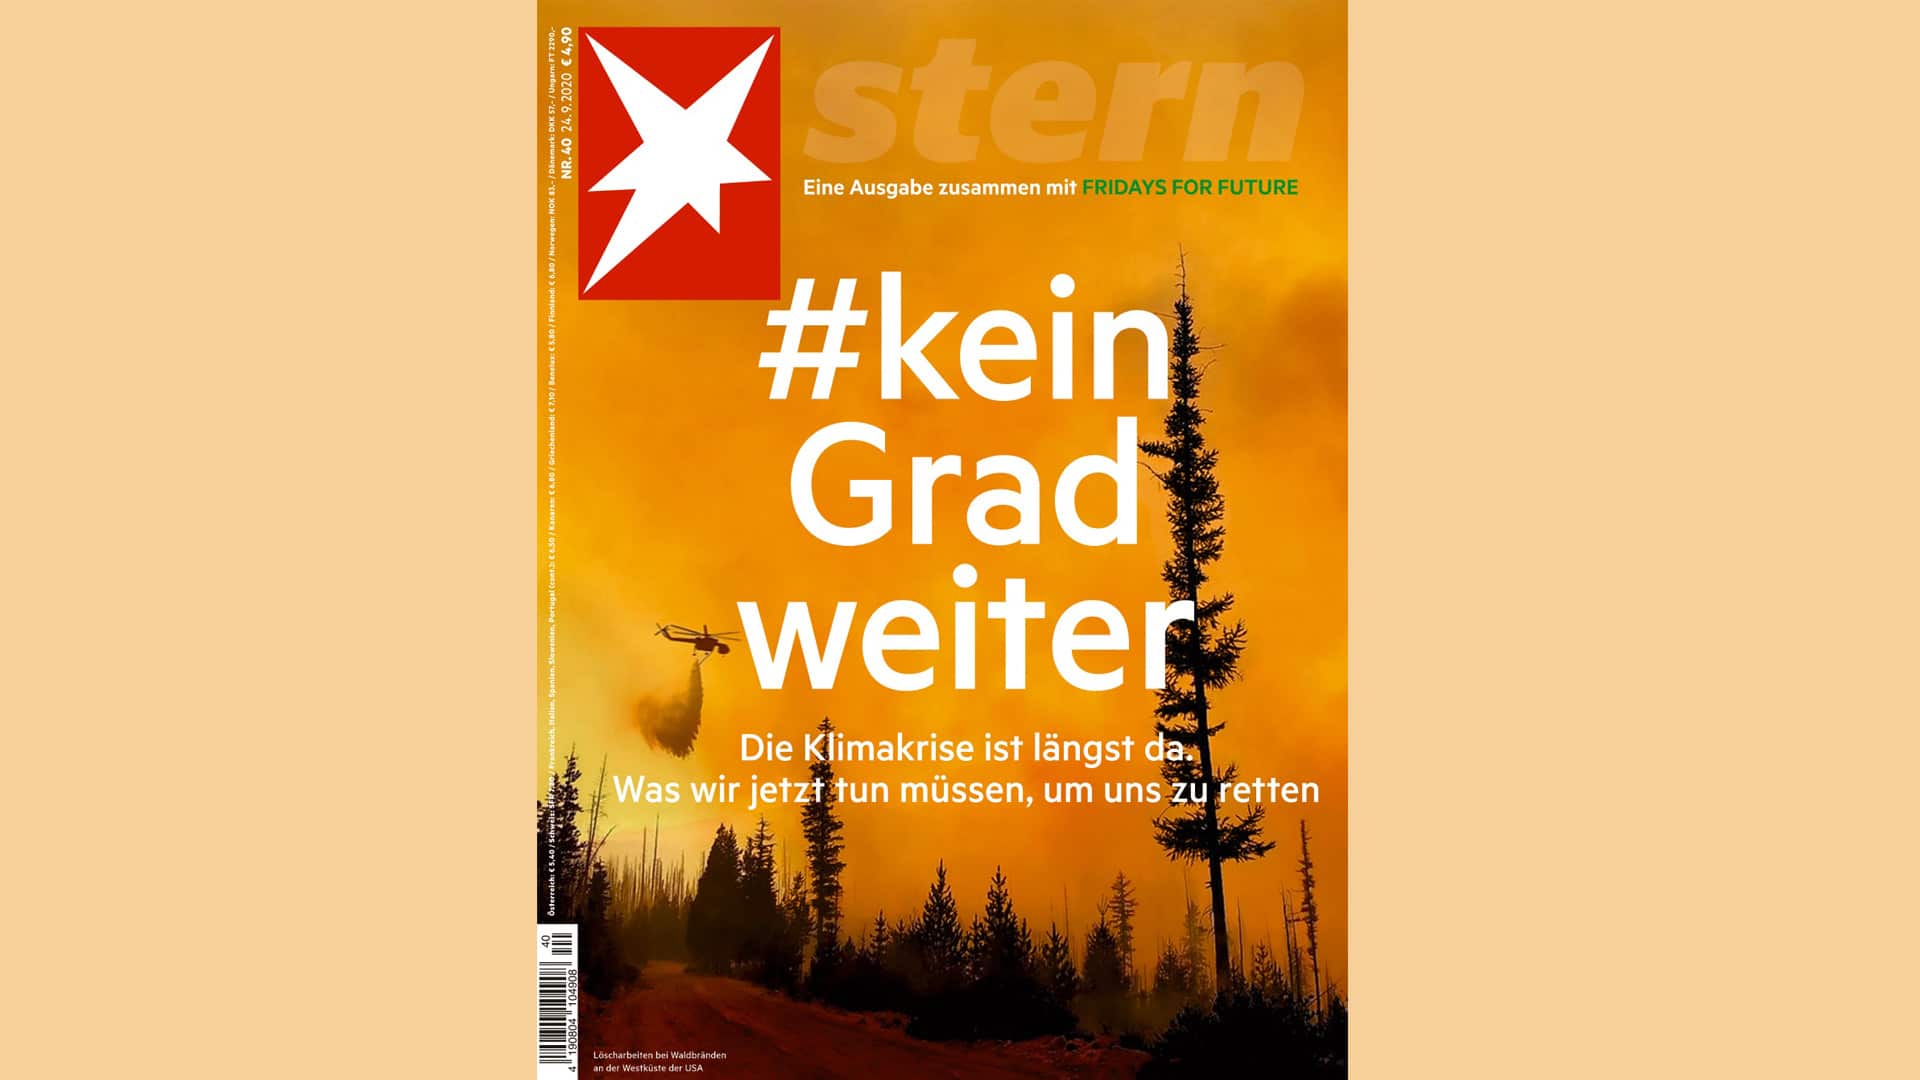 Das Magazin Stern macht sich gemein mit den Aktivisten der Klimabewegung. Dafür hagelt es Kritik.